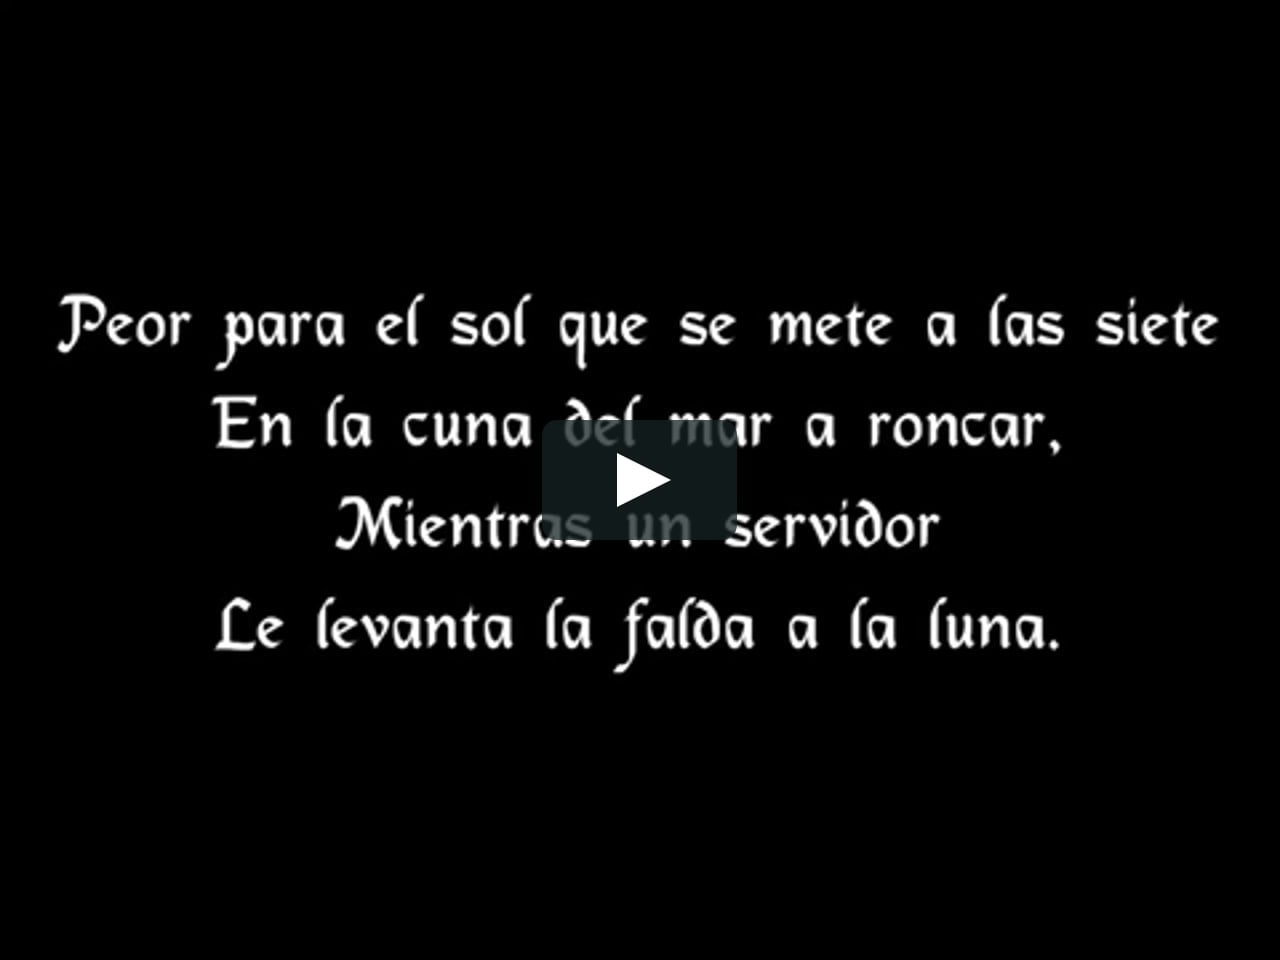 Pornografía Berri bufanda Joaquín Sabina- Peor para el sol (letra) on Vimeo